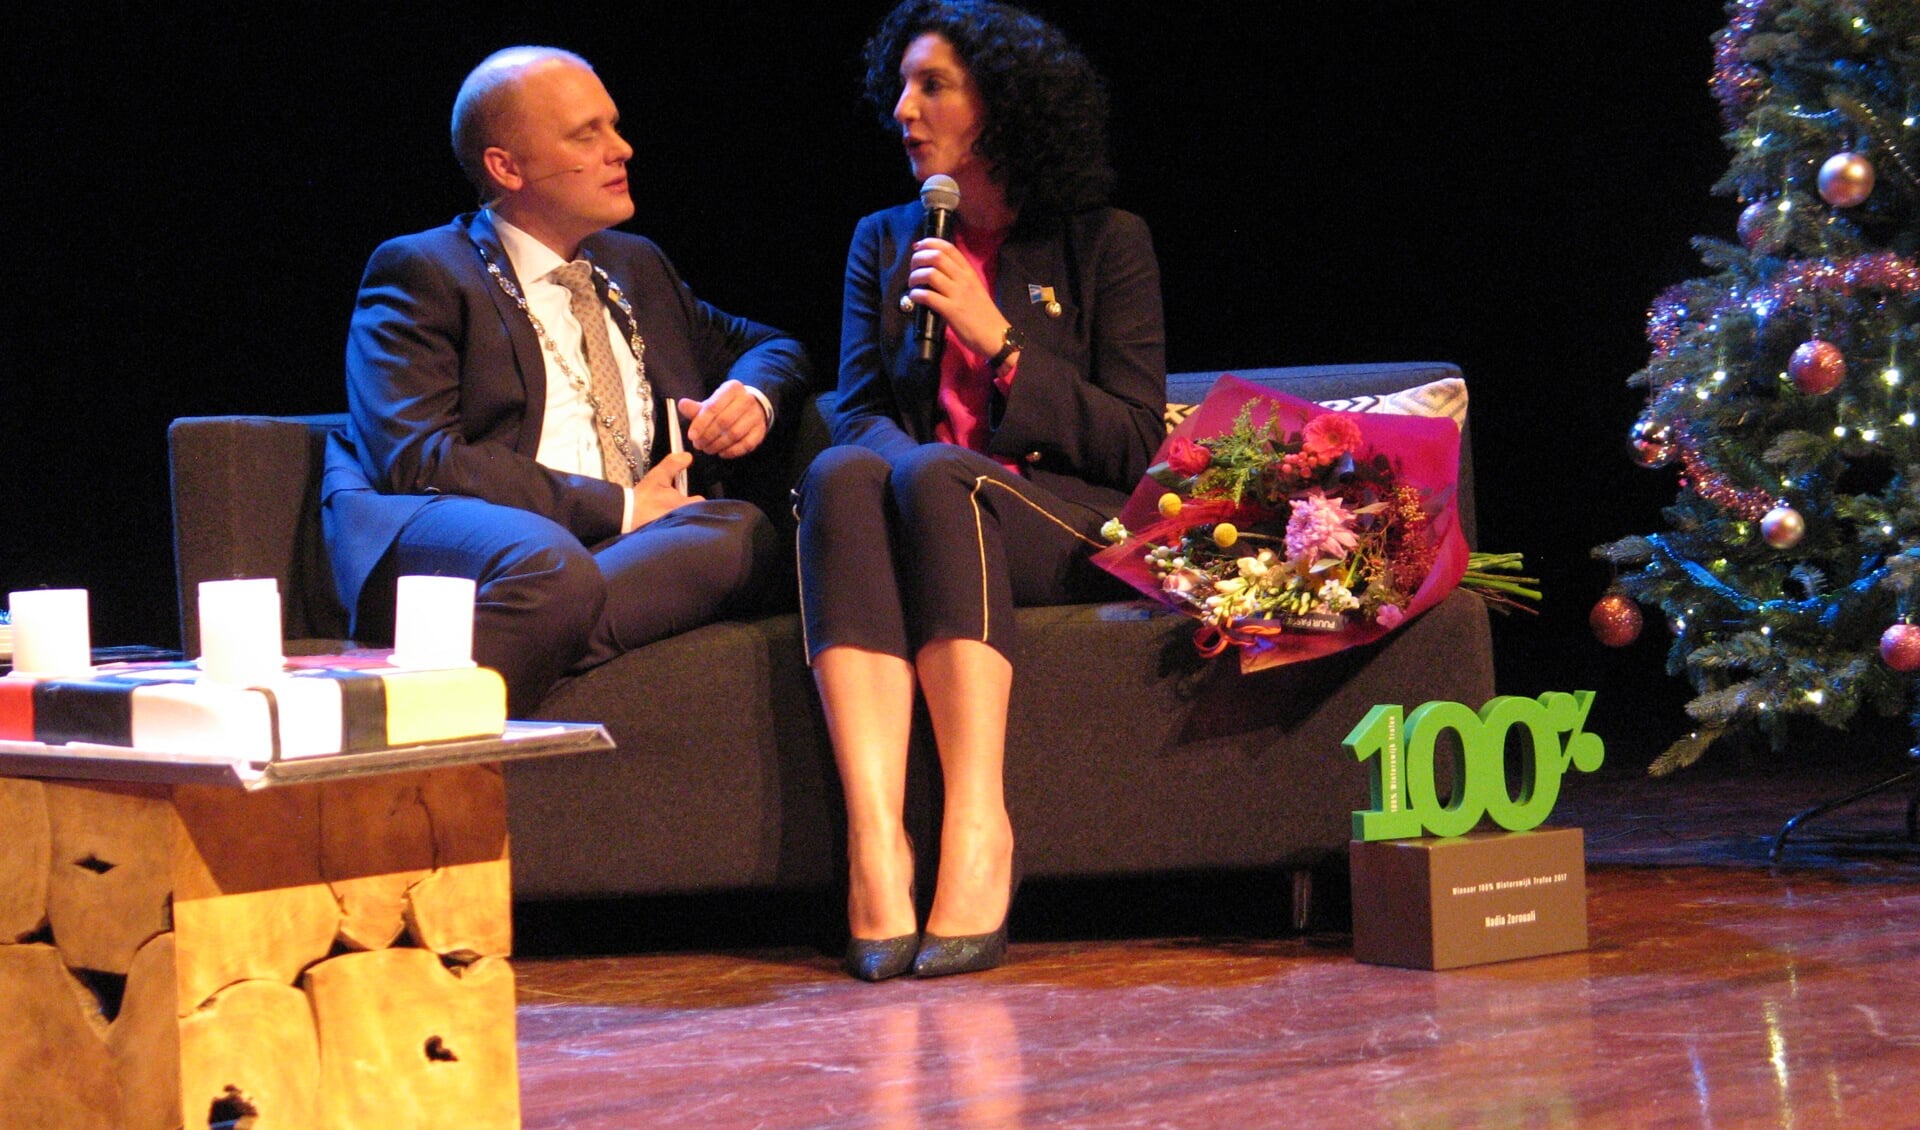 Promotieprijswinnaar Nadia Zerouali beantwoordt een vraag van de burgemeester. Foto: Bernhard Harfsterkamp